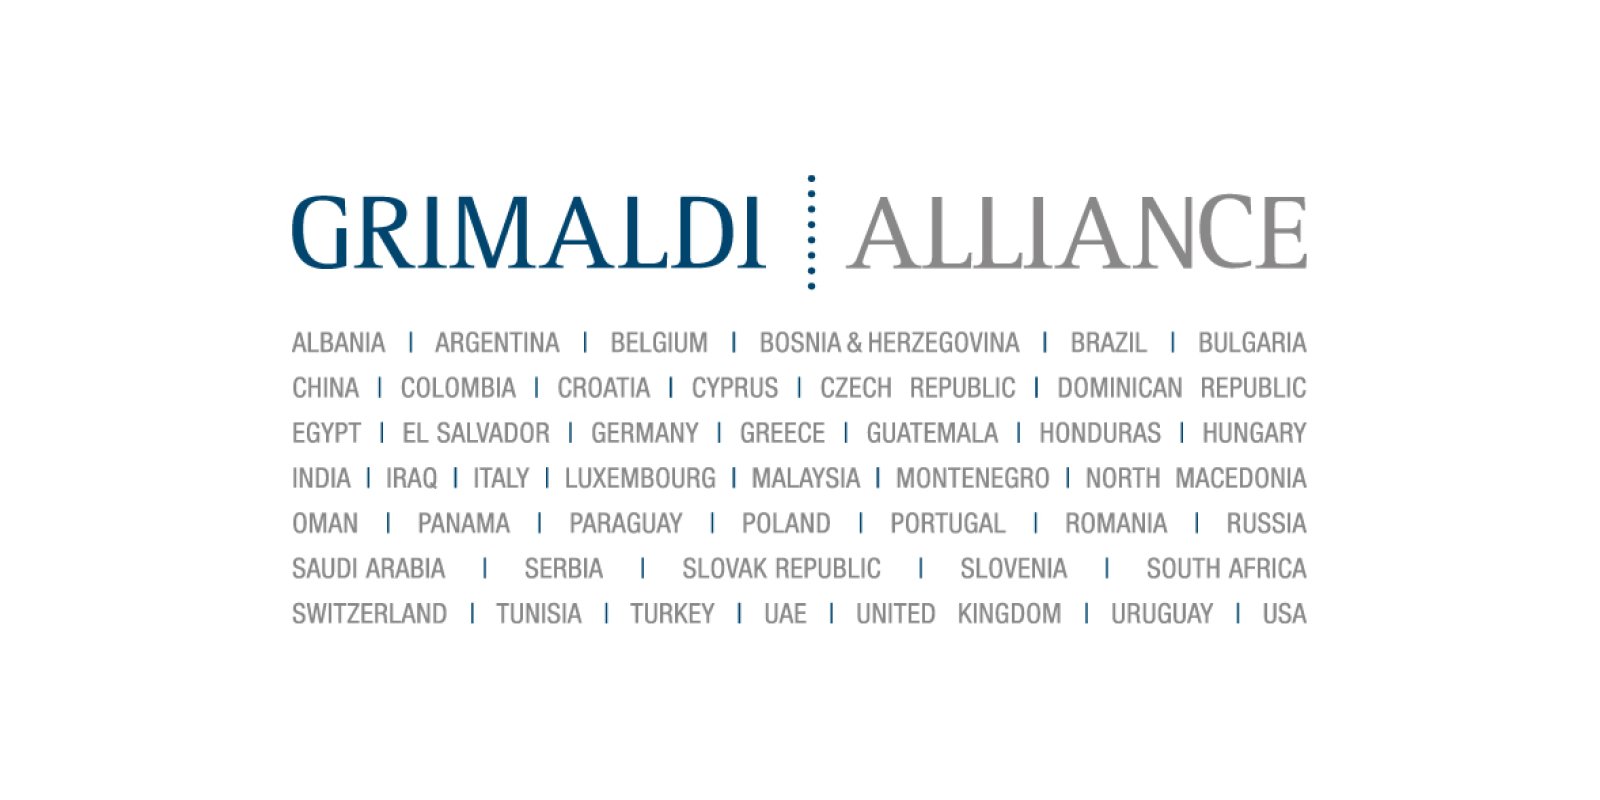 Logo Grimaldi Studio Legale